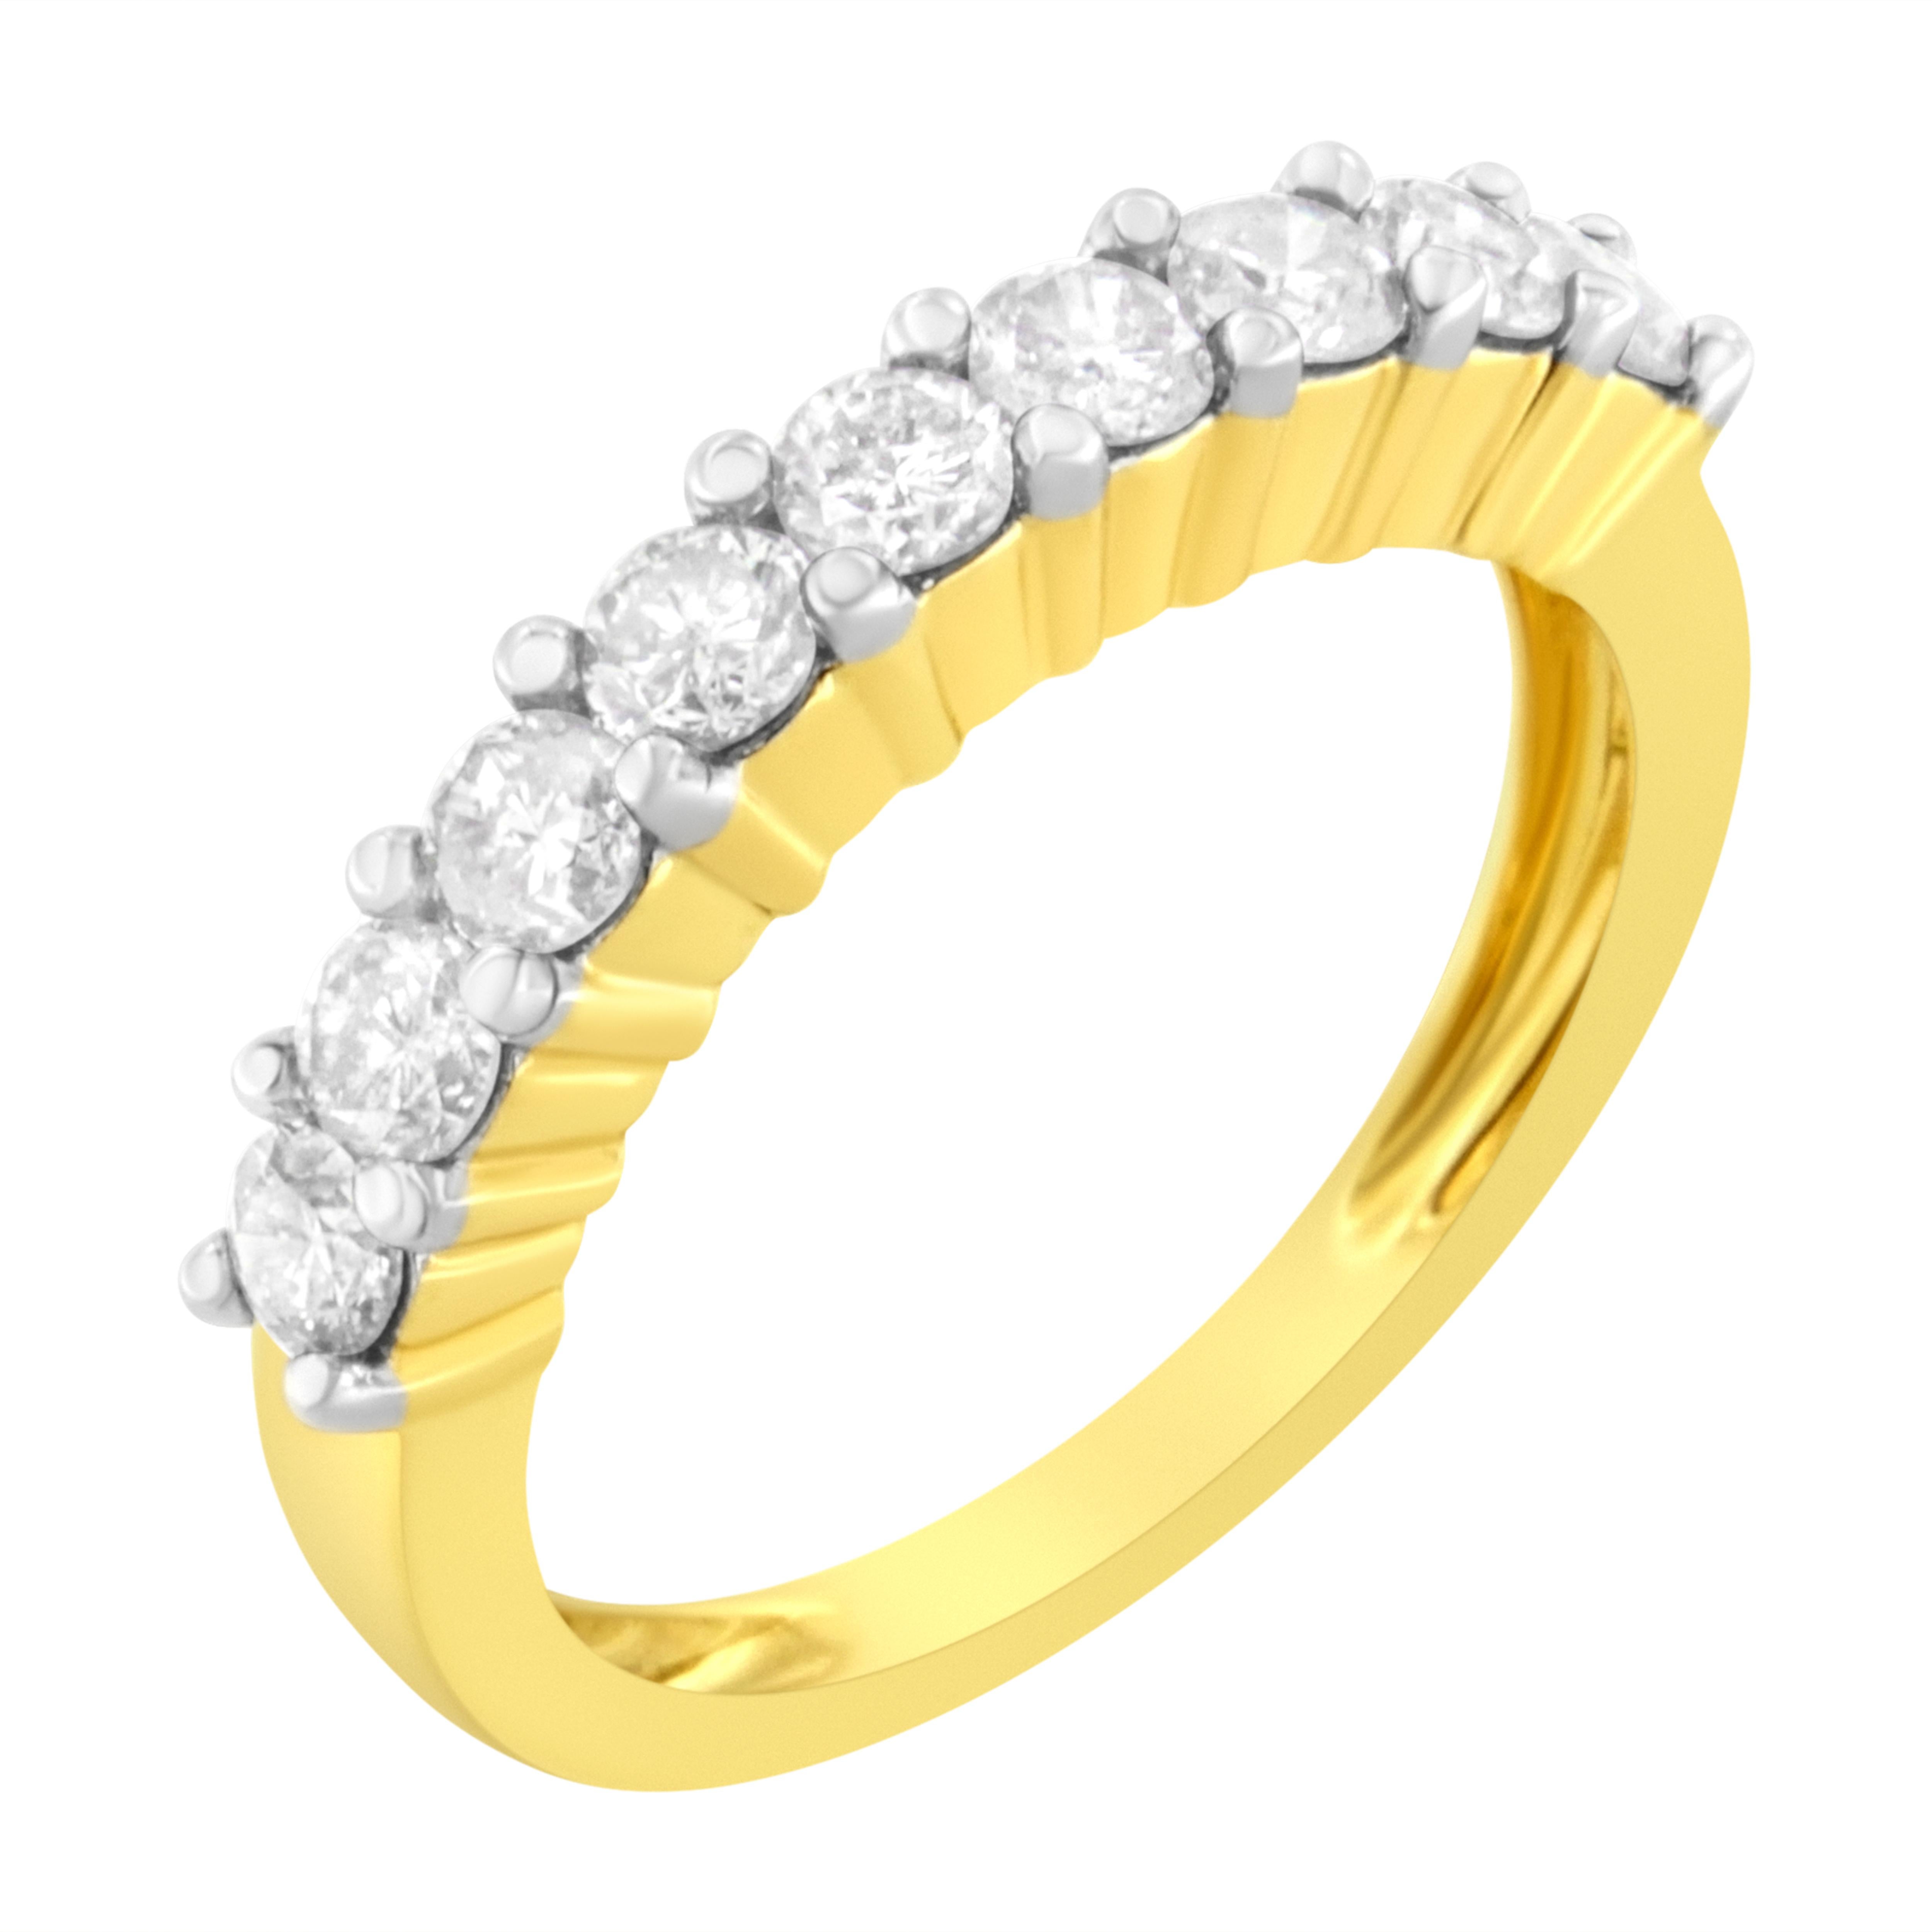 Cette bague classique et élégante en or jaune 10k est ornée de 1 carat de magnifiques diamants naturels. Neuf diamants de taille ronde embellis dans un serti clos sont placés sur le dessus de ce bracelet en or jaune étincelant. Il s'agit d'une pièce